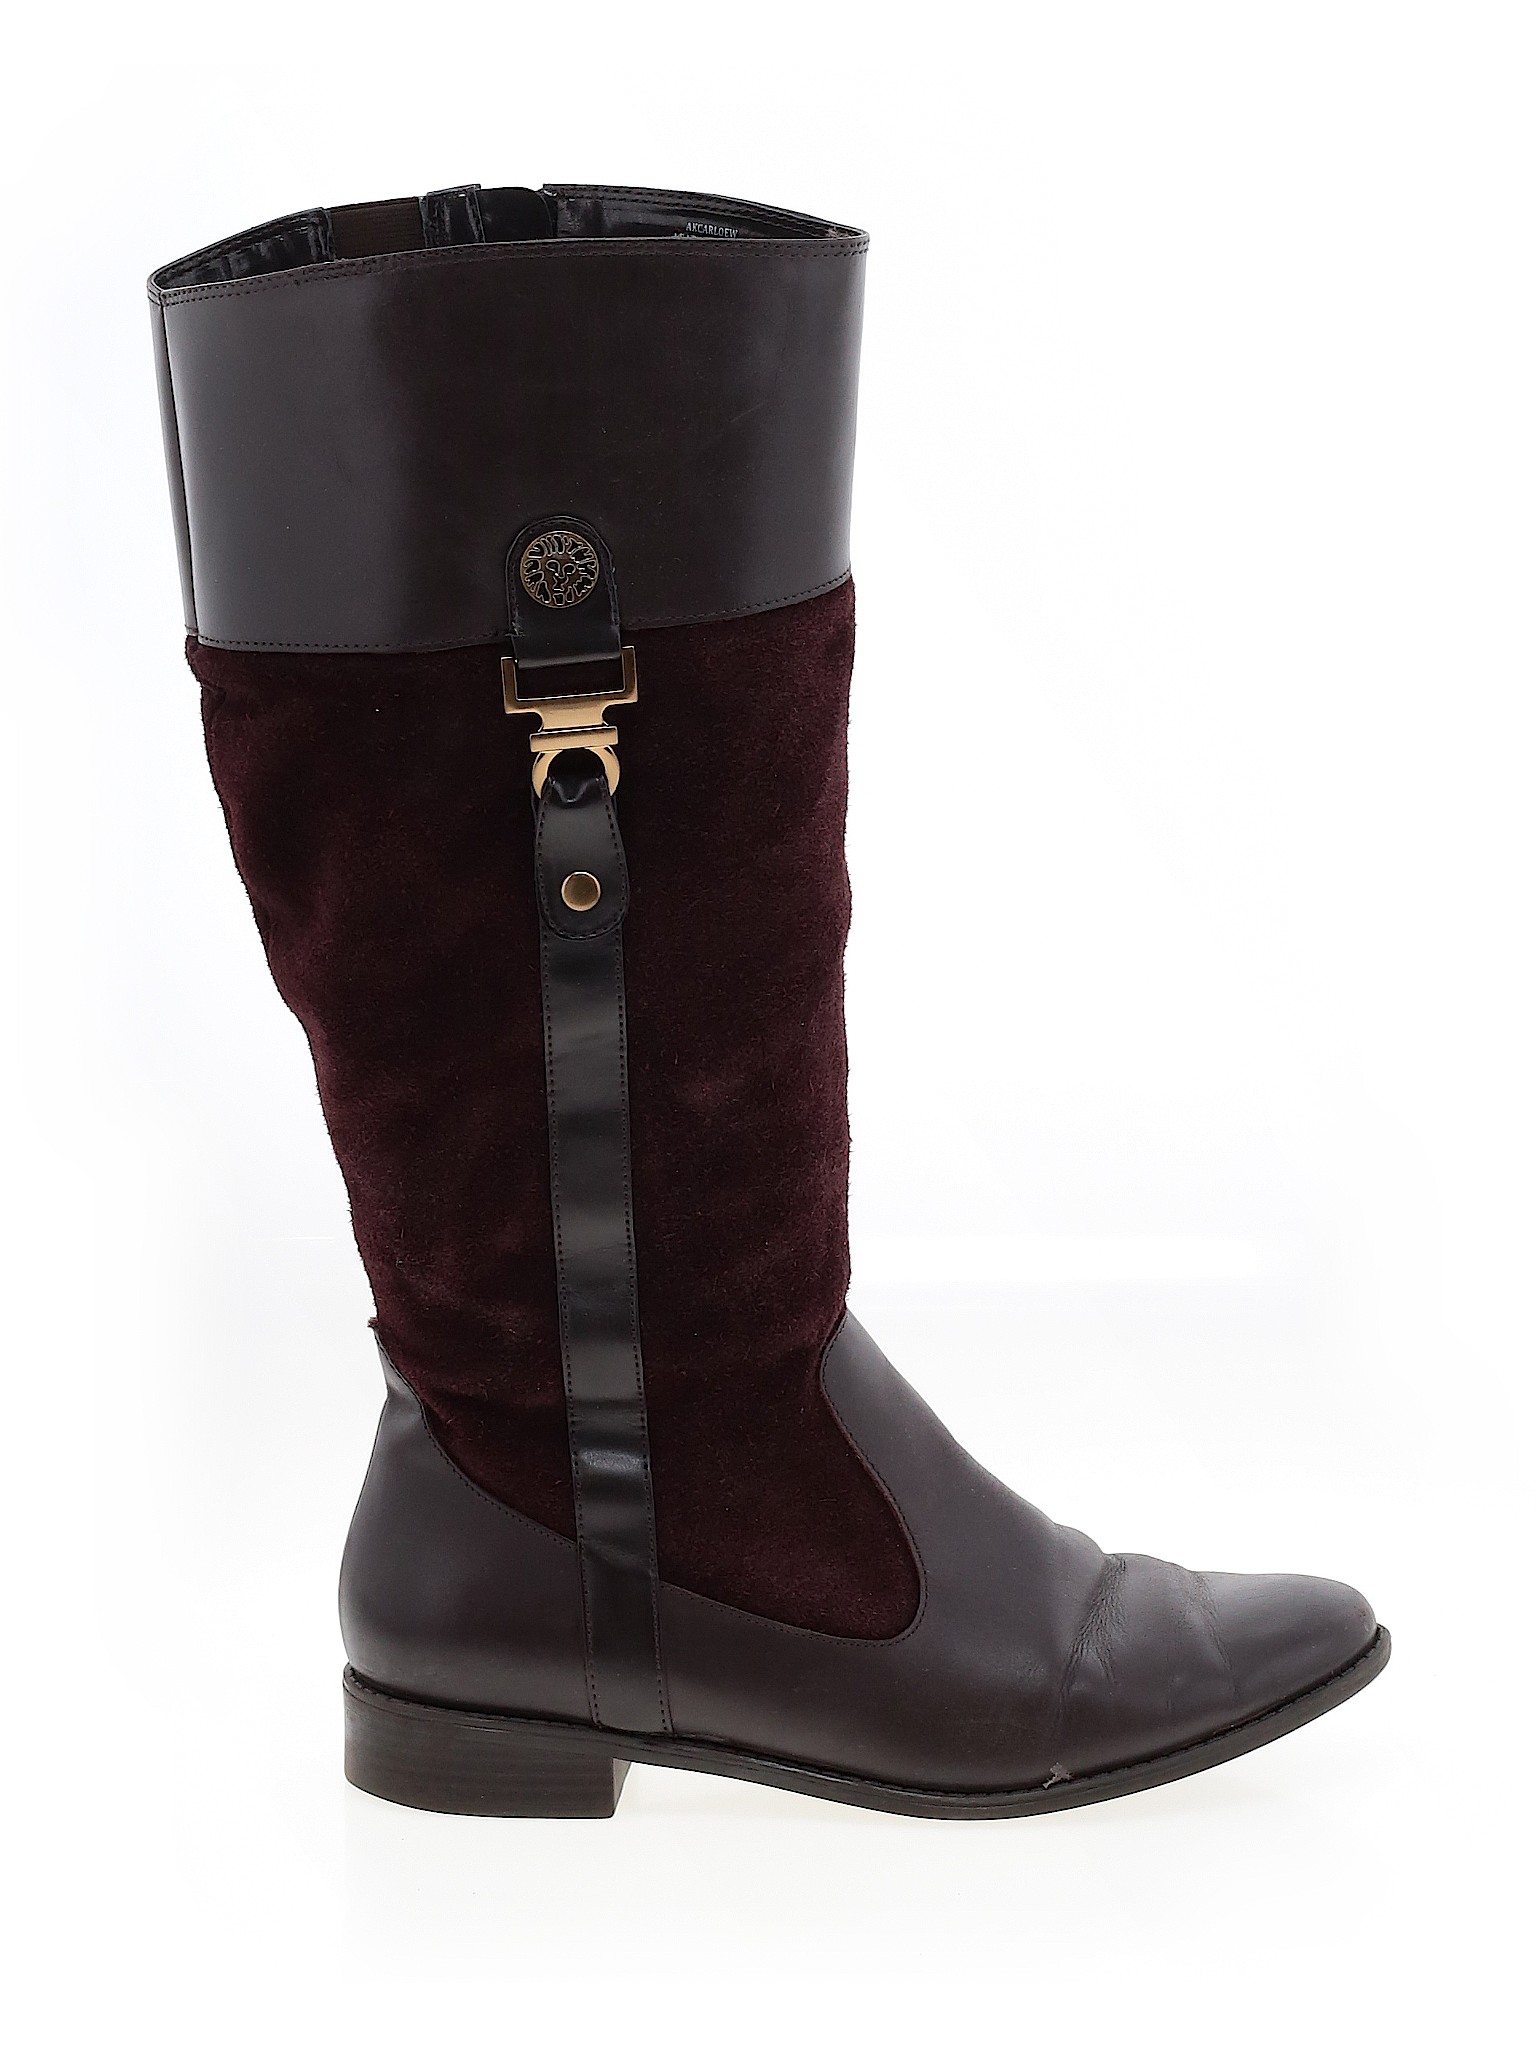 AK Anne Klein Women Brown Boots US 9 | eBay